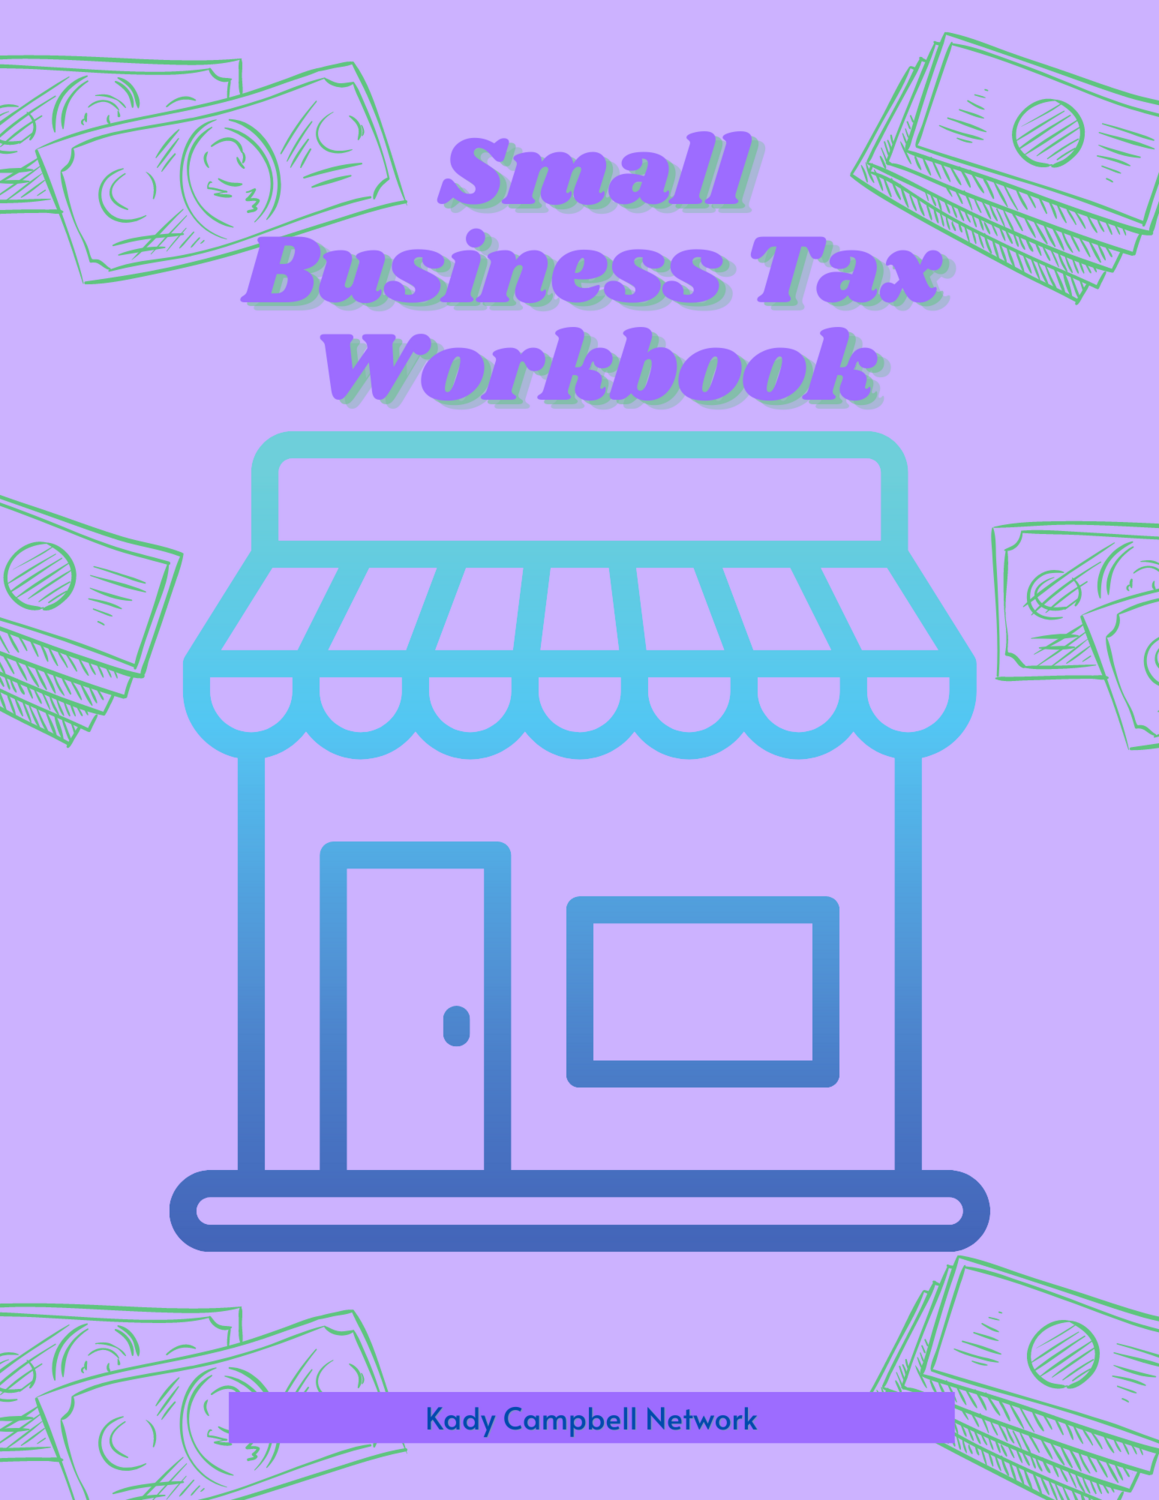 Small Business Tax Workbook